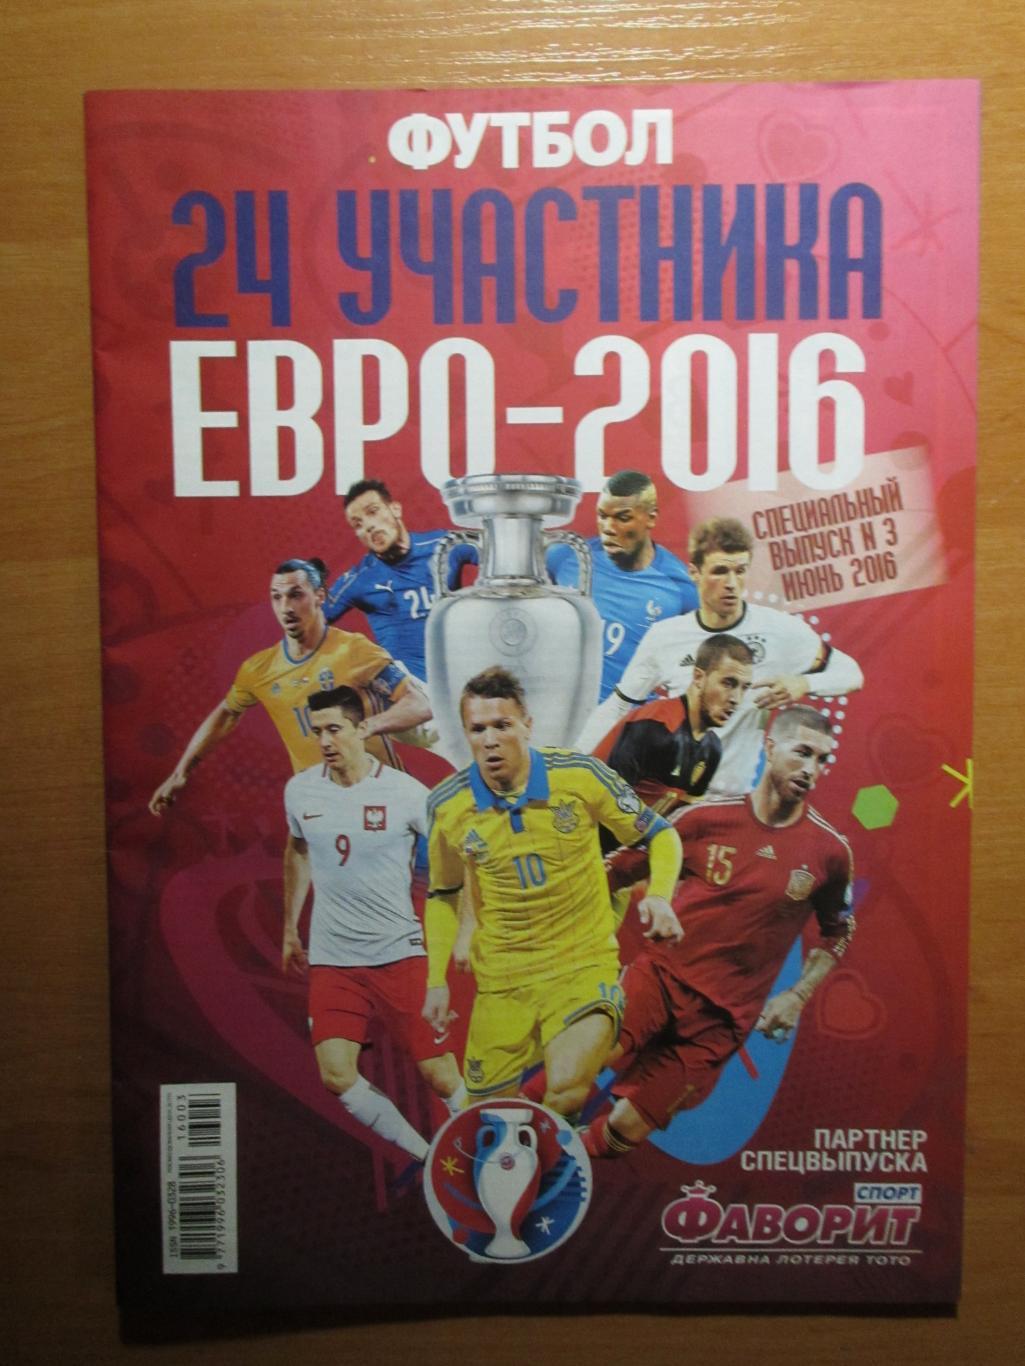 ЕВРО 2016, Футбол спец.выпуск №3 июнь 2016